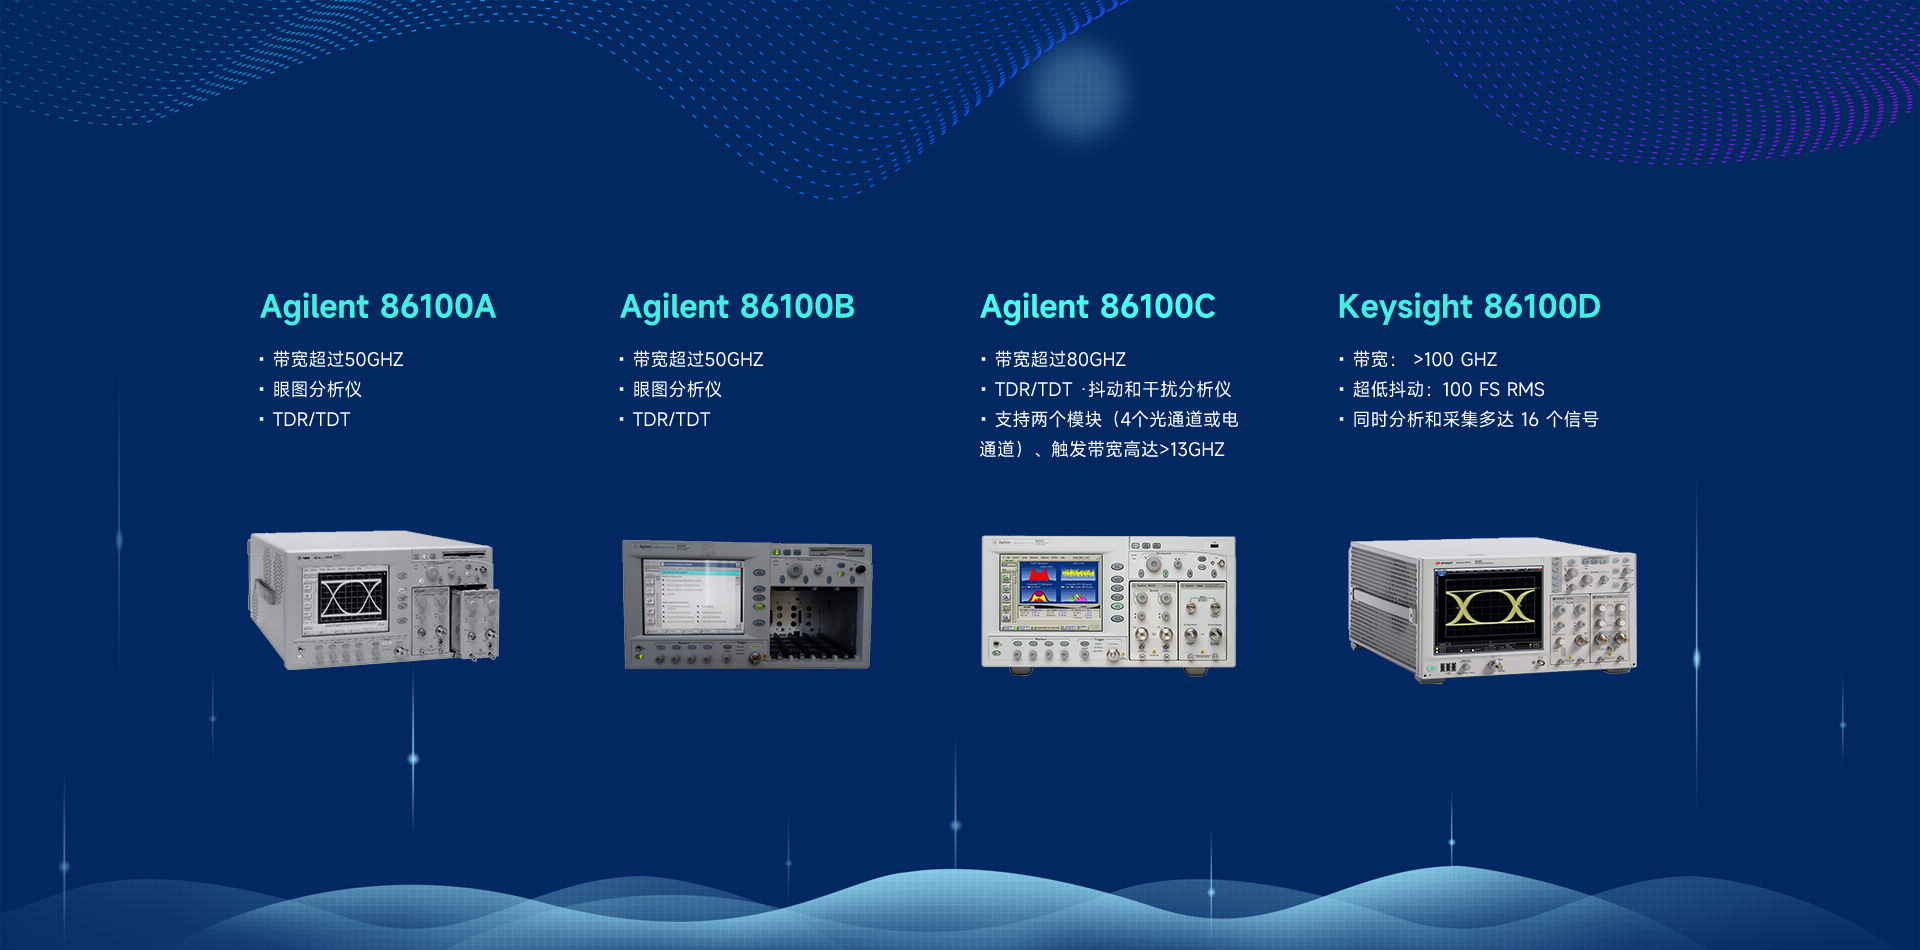 keysight 86100系列光电信号采样示波器是使用模块来创建波形分析系统。